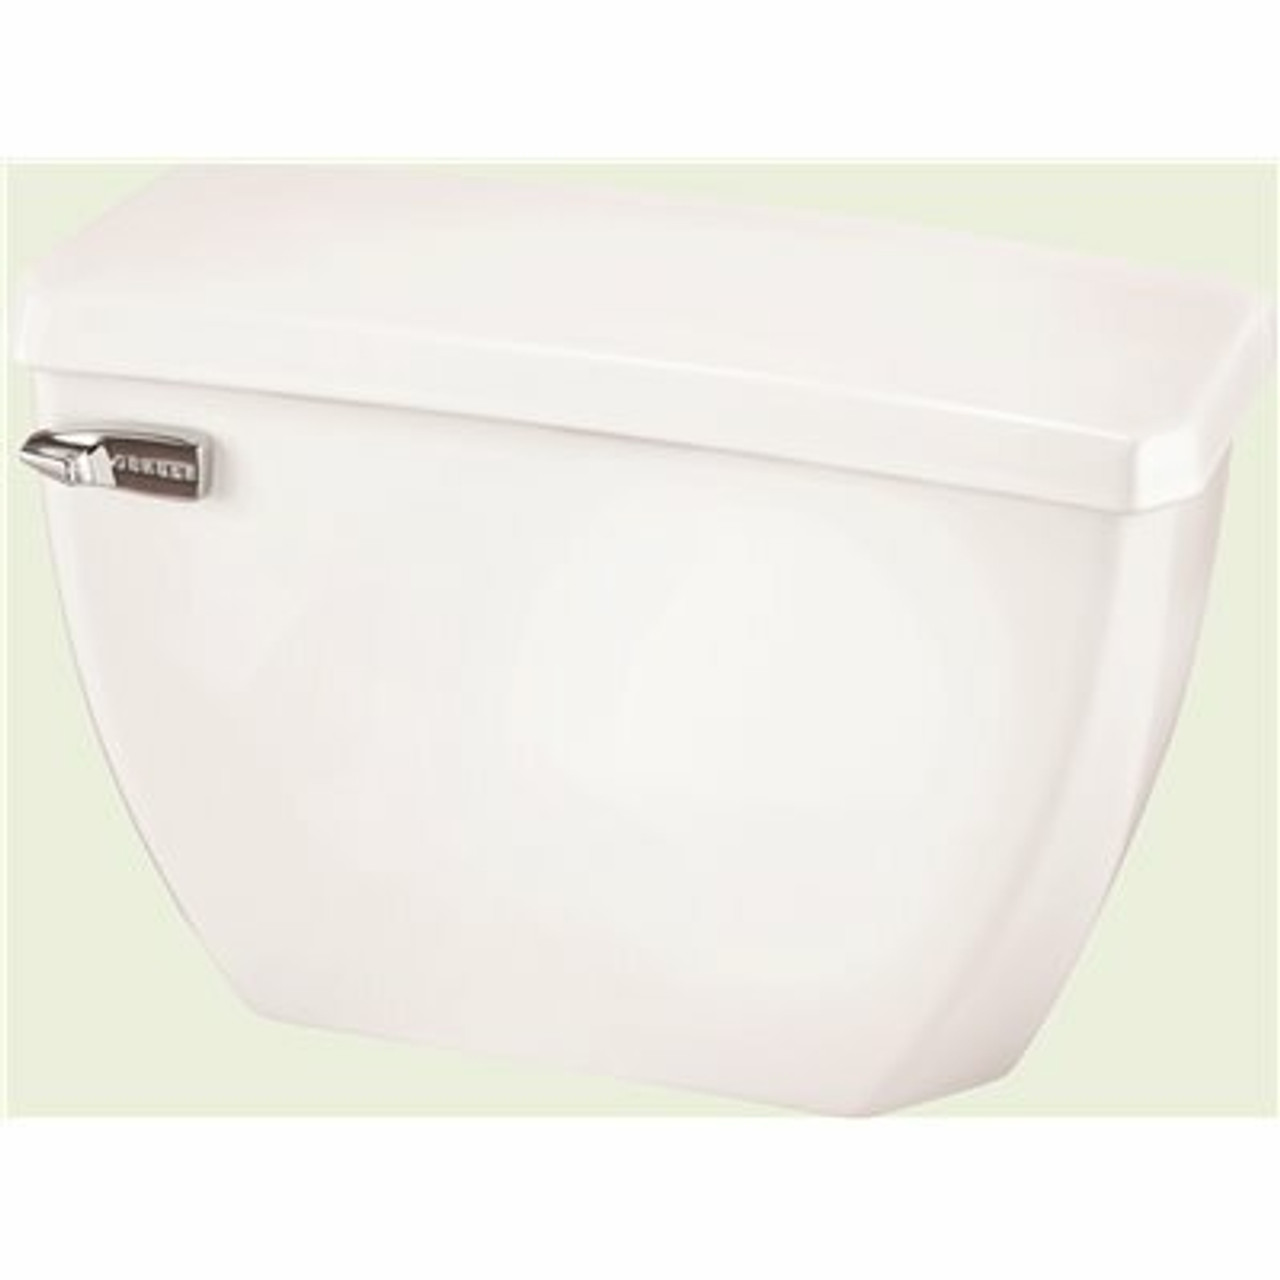 Gerber Plumbing Ultra Flush 1.0 Gpf Single Flush Toilet Tank Only In White